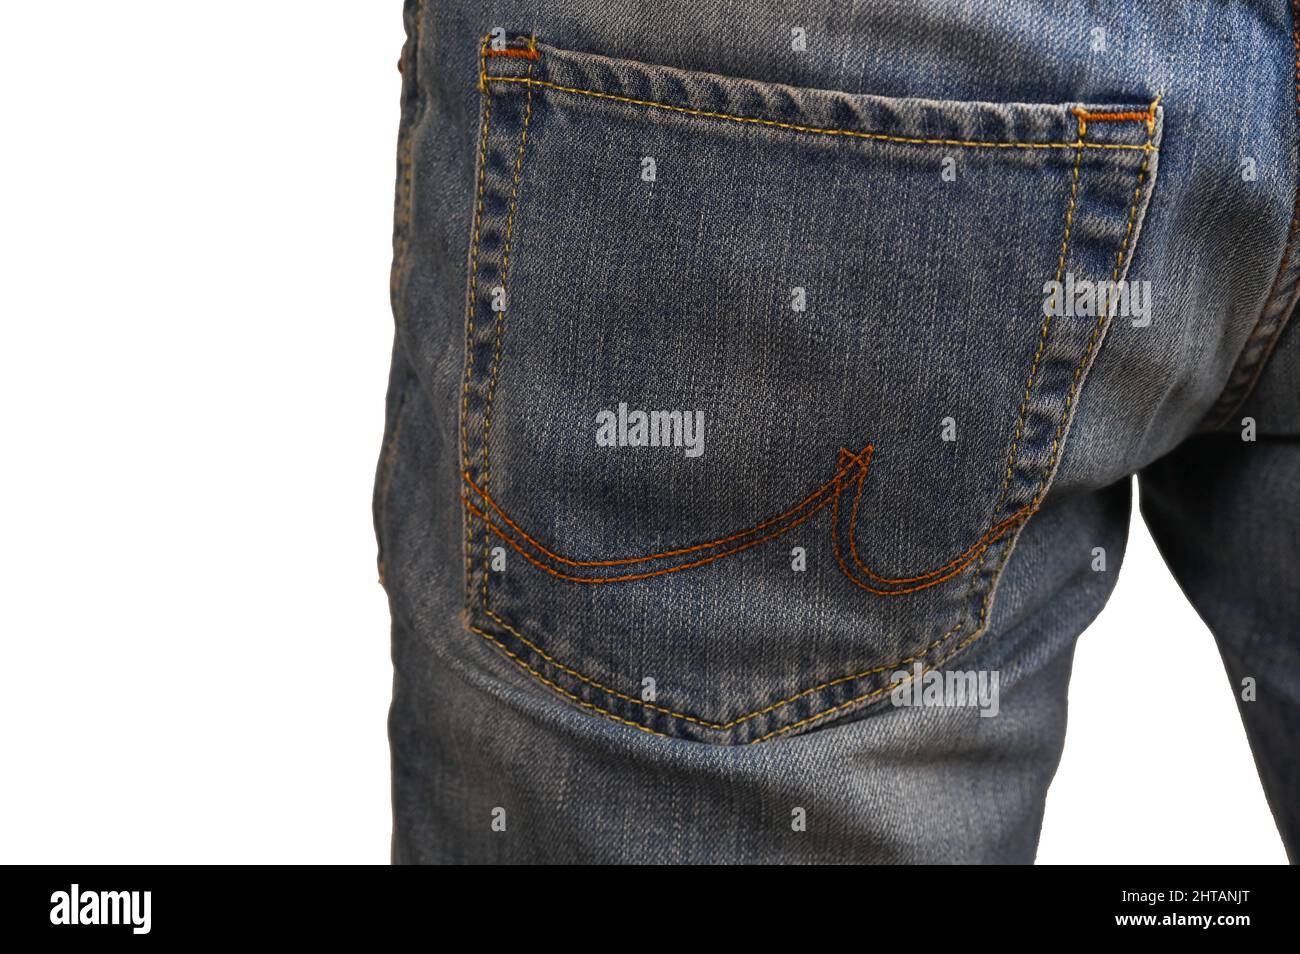 bolsillo trasero de jeans azules. aislado sobre un backgroun blanco Foto de stock